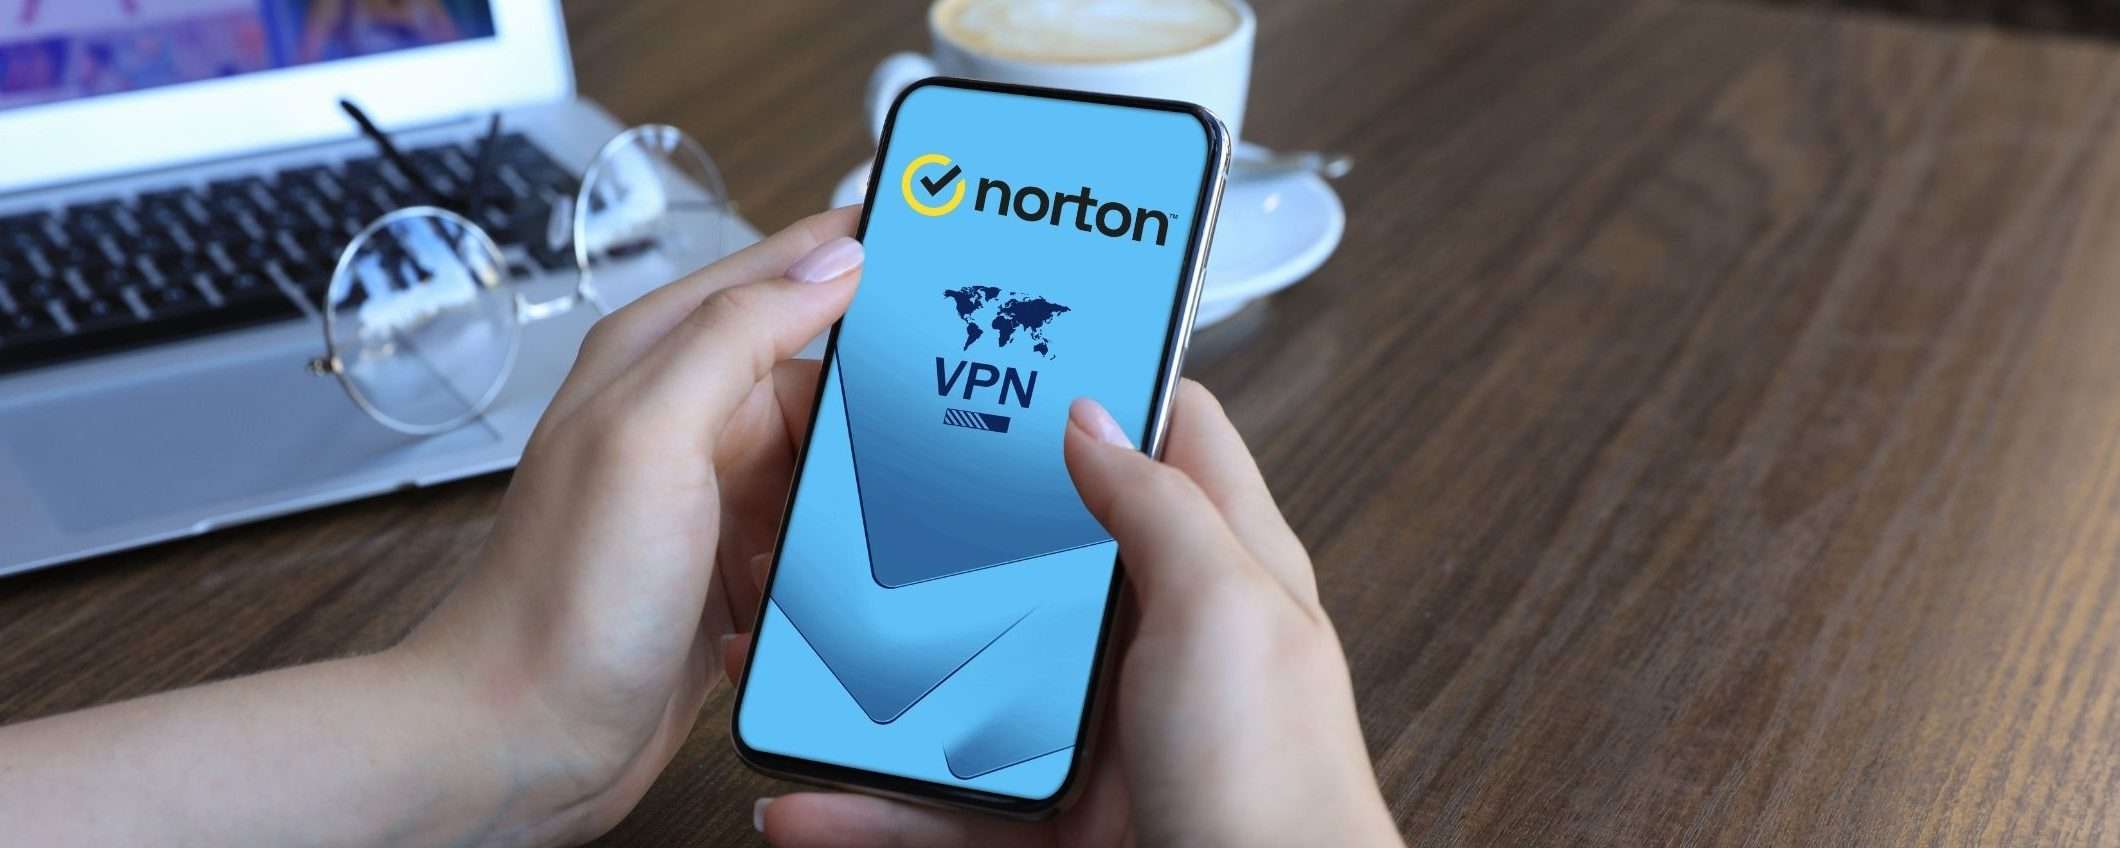 Norton 360 Deluxe: tutta la protezione di un antivirus più VPN illimitata